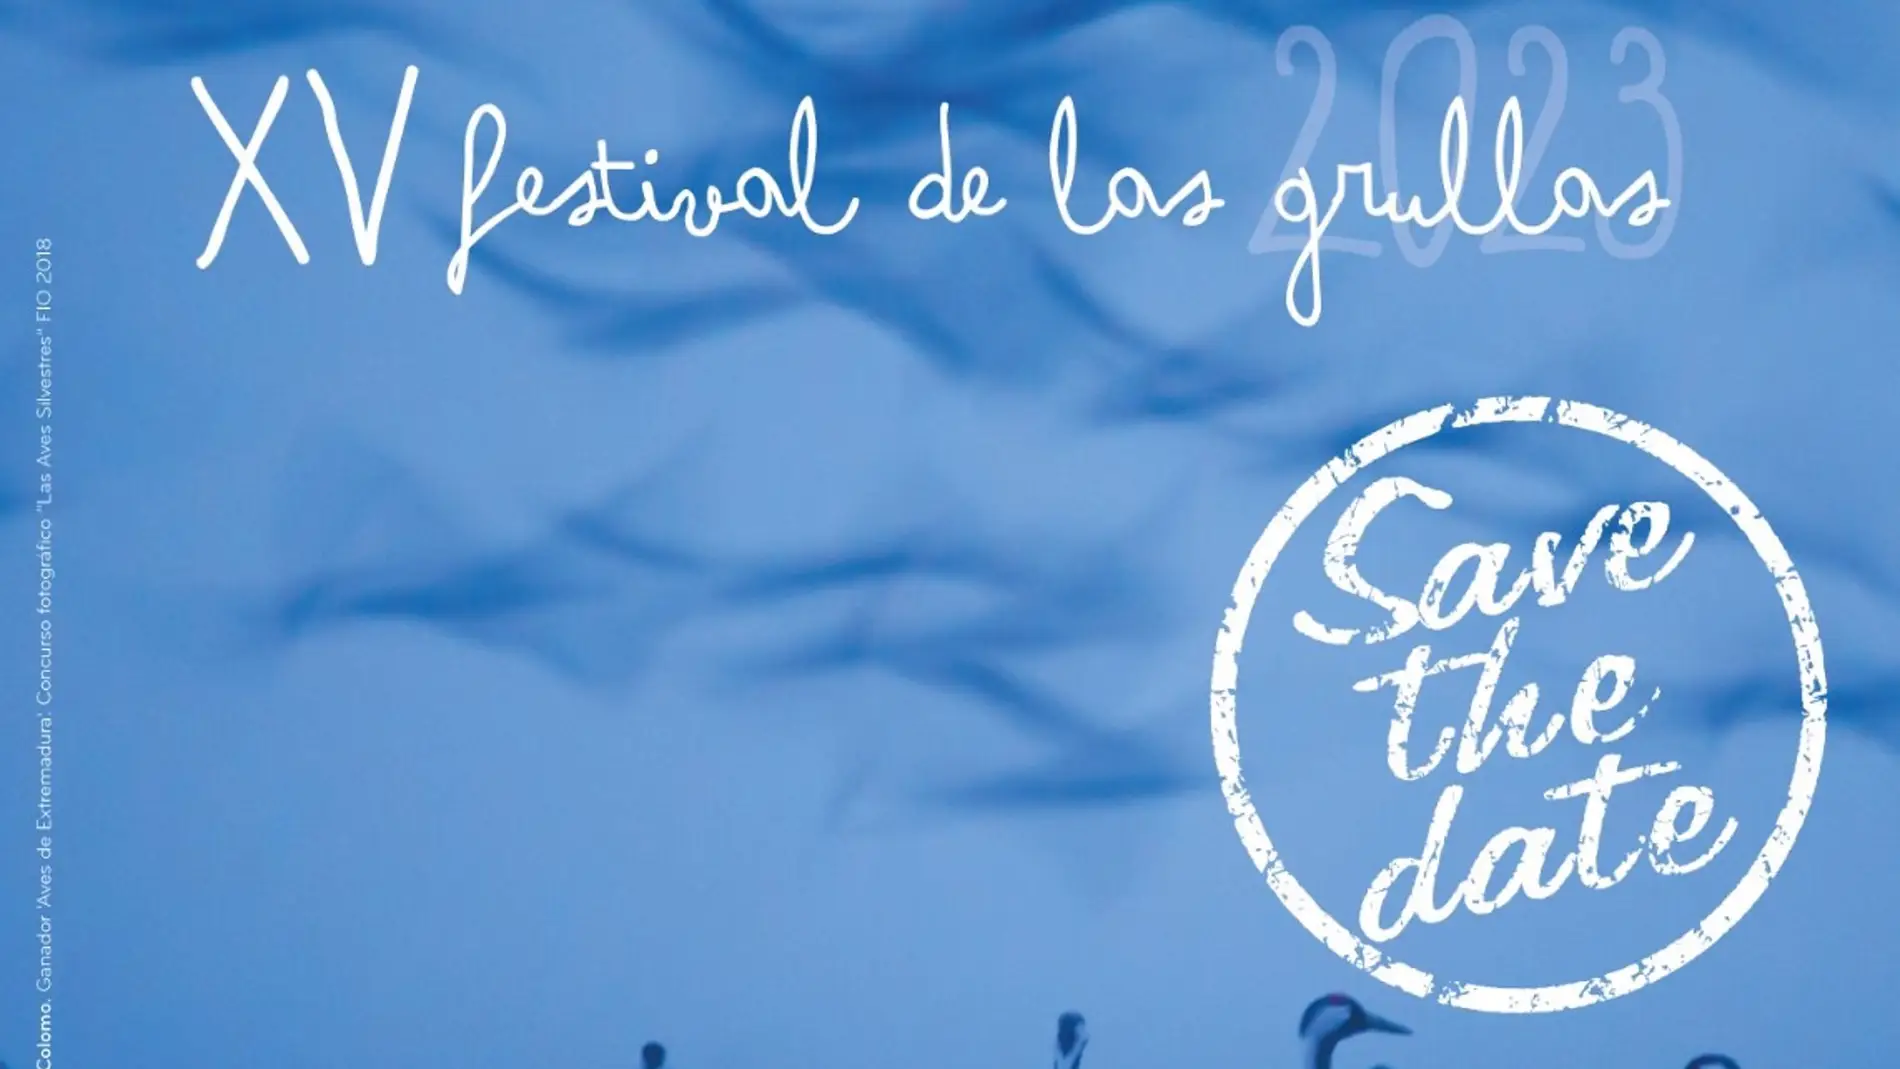 Navalvillar de Pela acoge este sábado su XV Festival de las Grullas con más de 30 actividades previstas